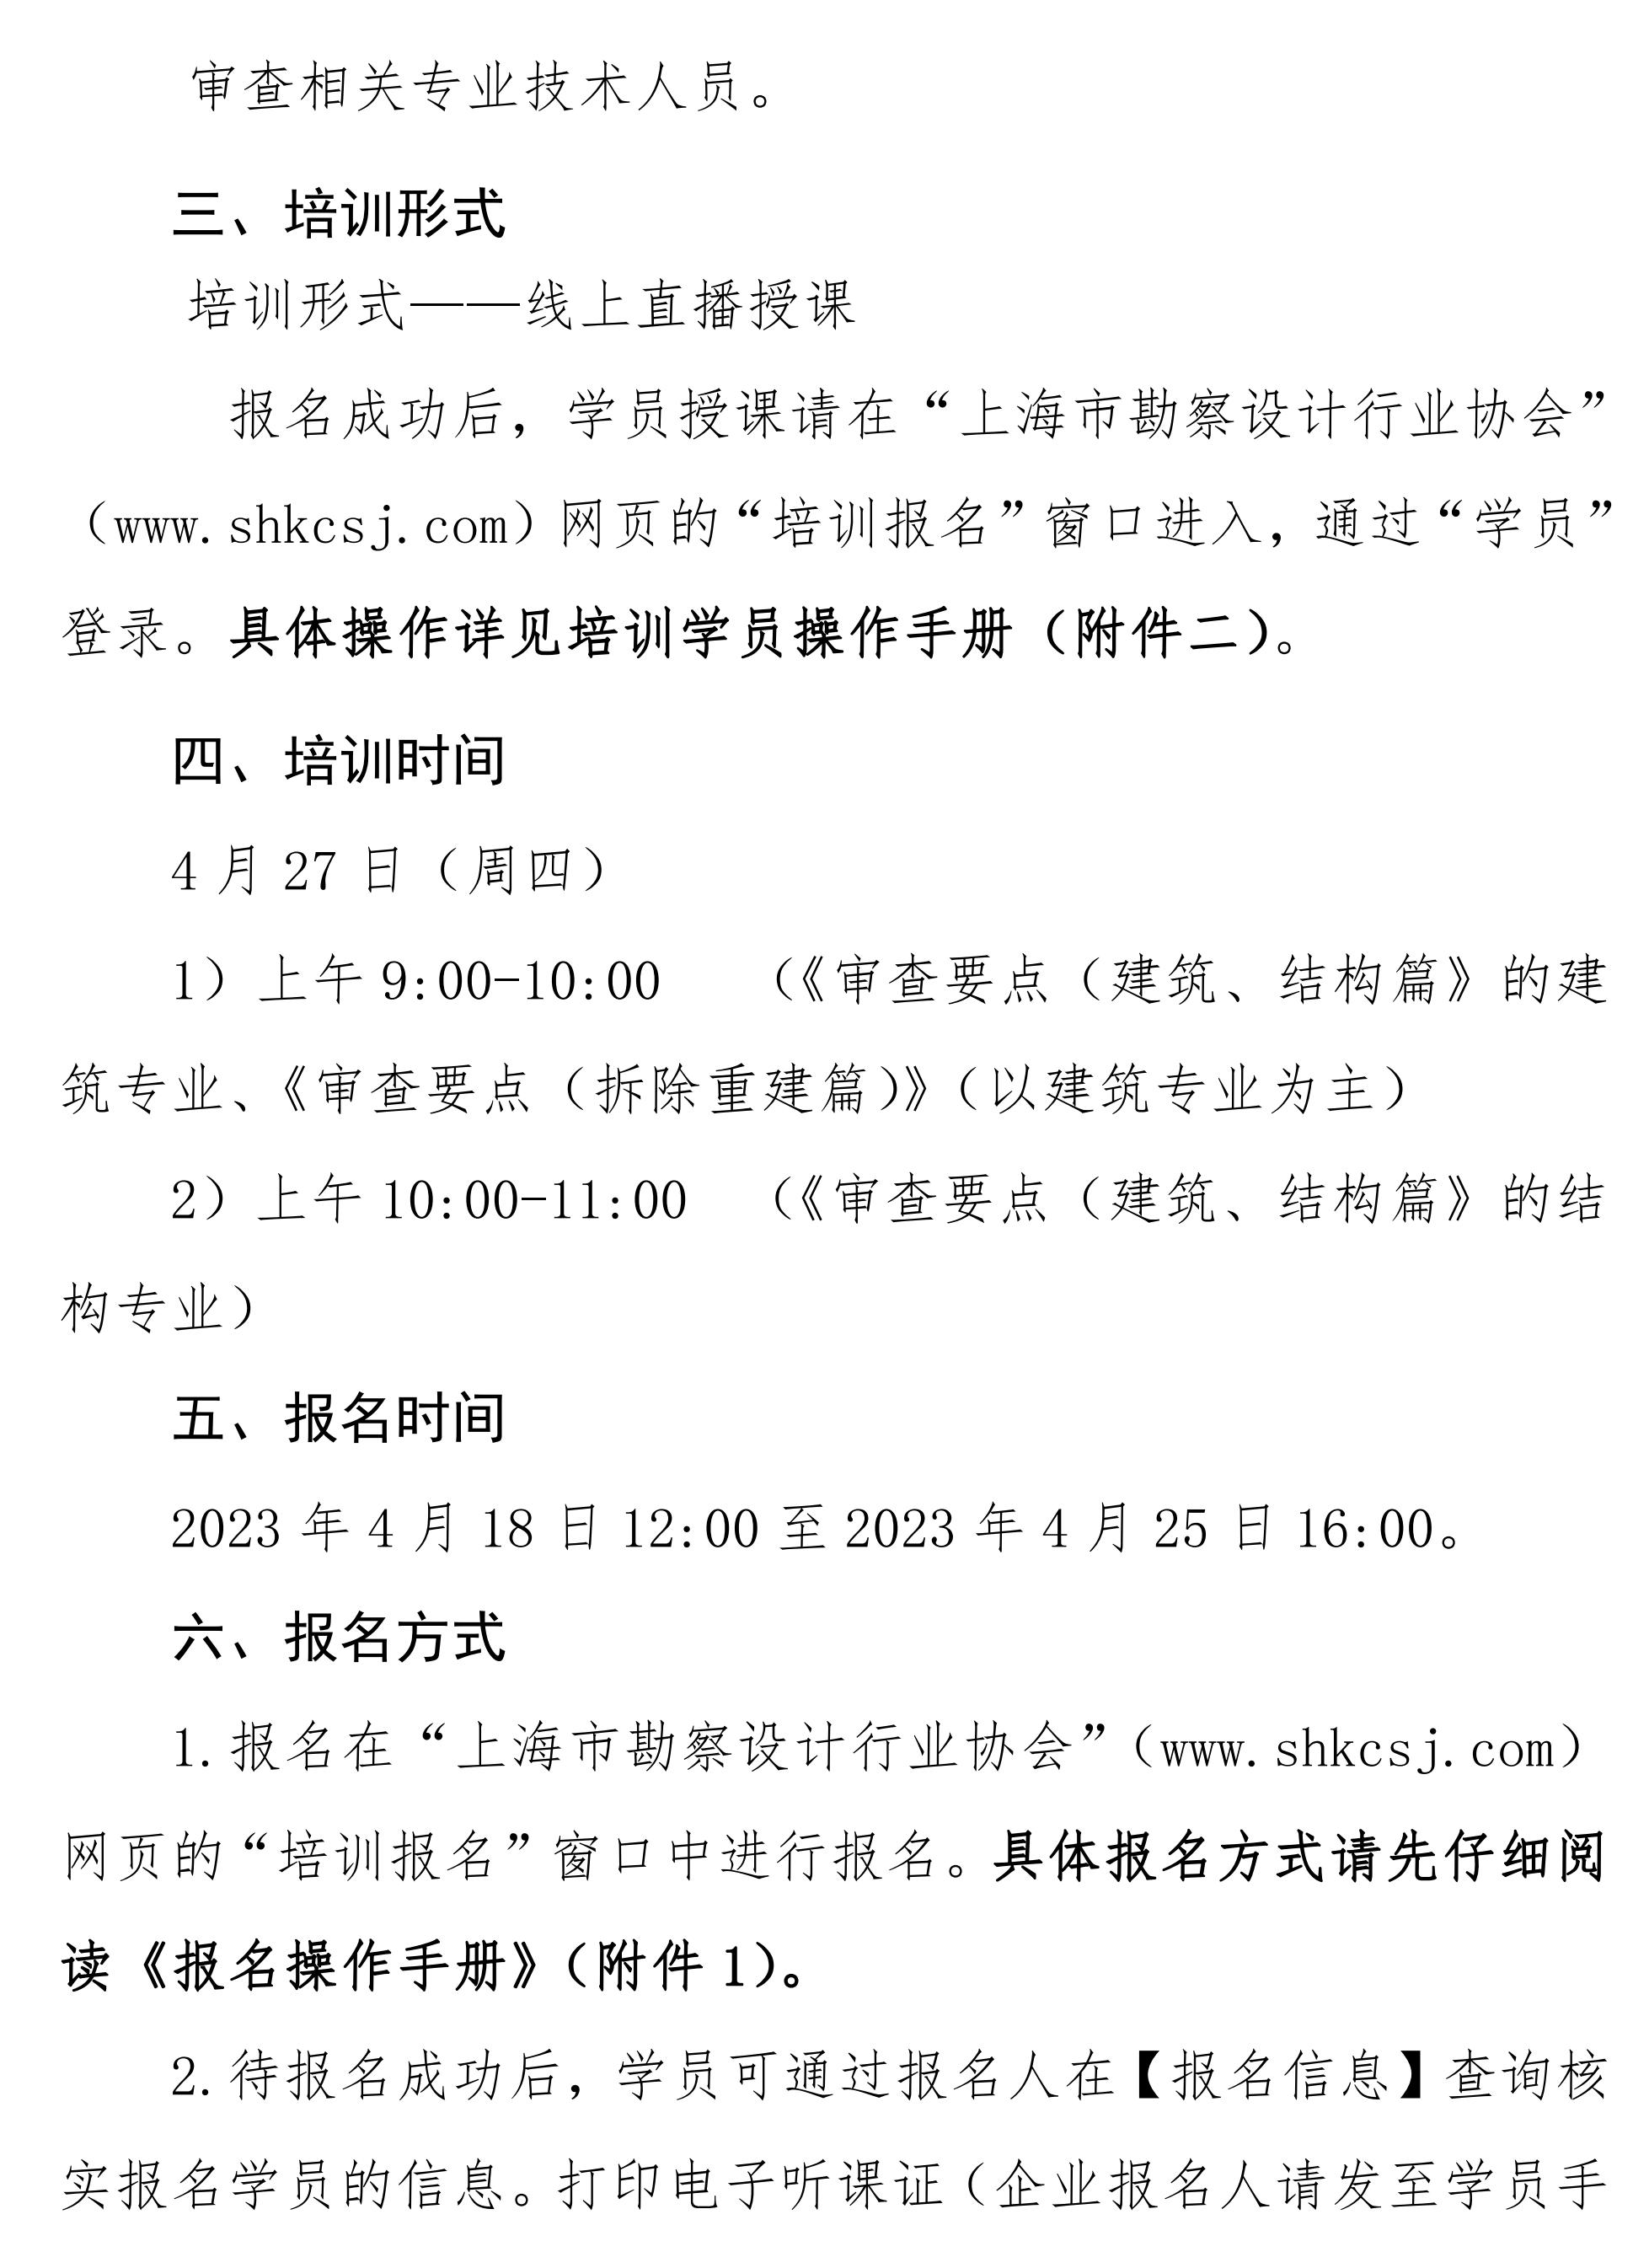 沪勘设培〔2023〕6号 -- 关于《上海市房屋建筑工程施工图设计文件技术审查要点（3.0版）（建筑、结构篇）》及《上海市旧住房成套改造项目施工图设计文件技术审查要点》技术培训的通知2_02.jpg